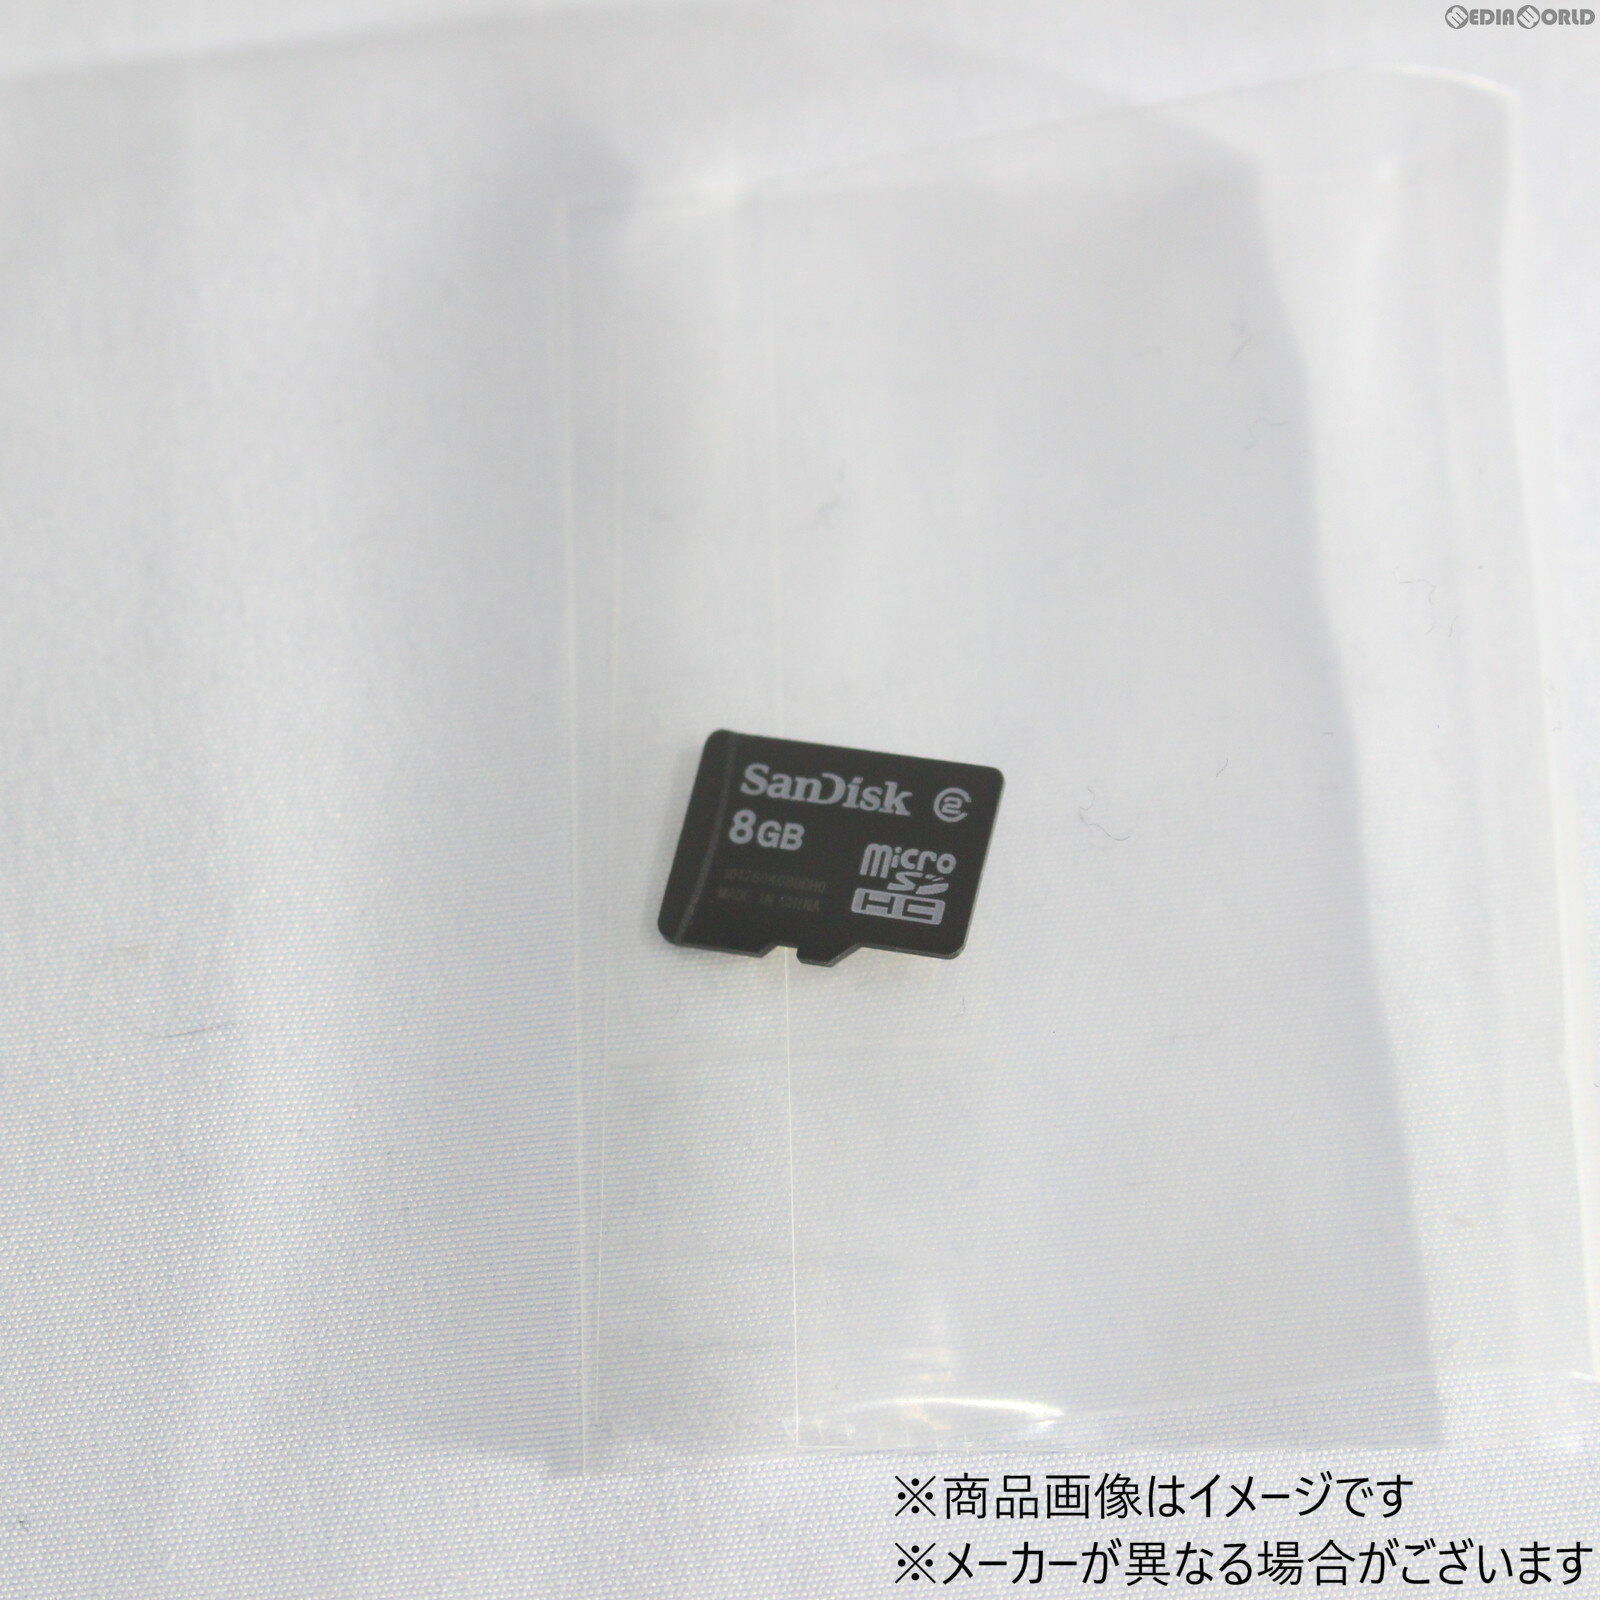 microSDHCカード(マイクロSDHCカード) 8GB nintendo互換製品 ※New3DSで動作確認済(20120131)